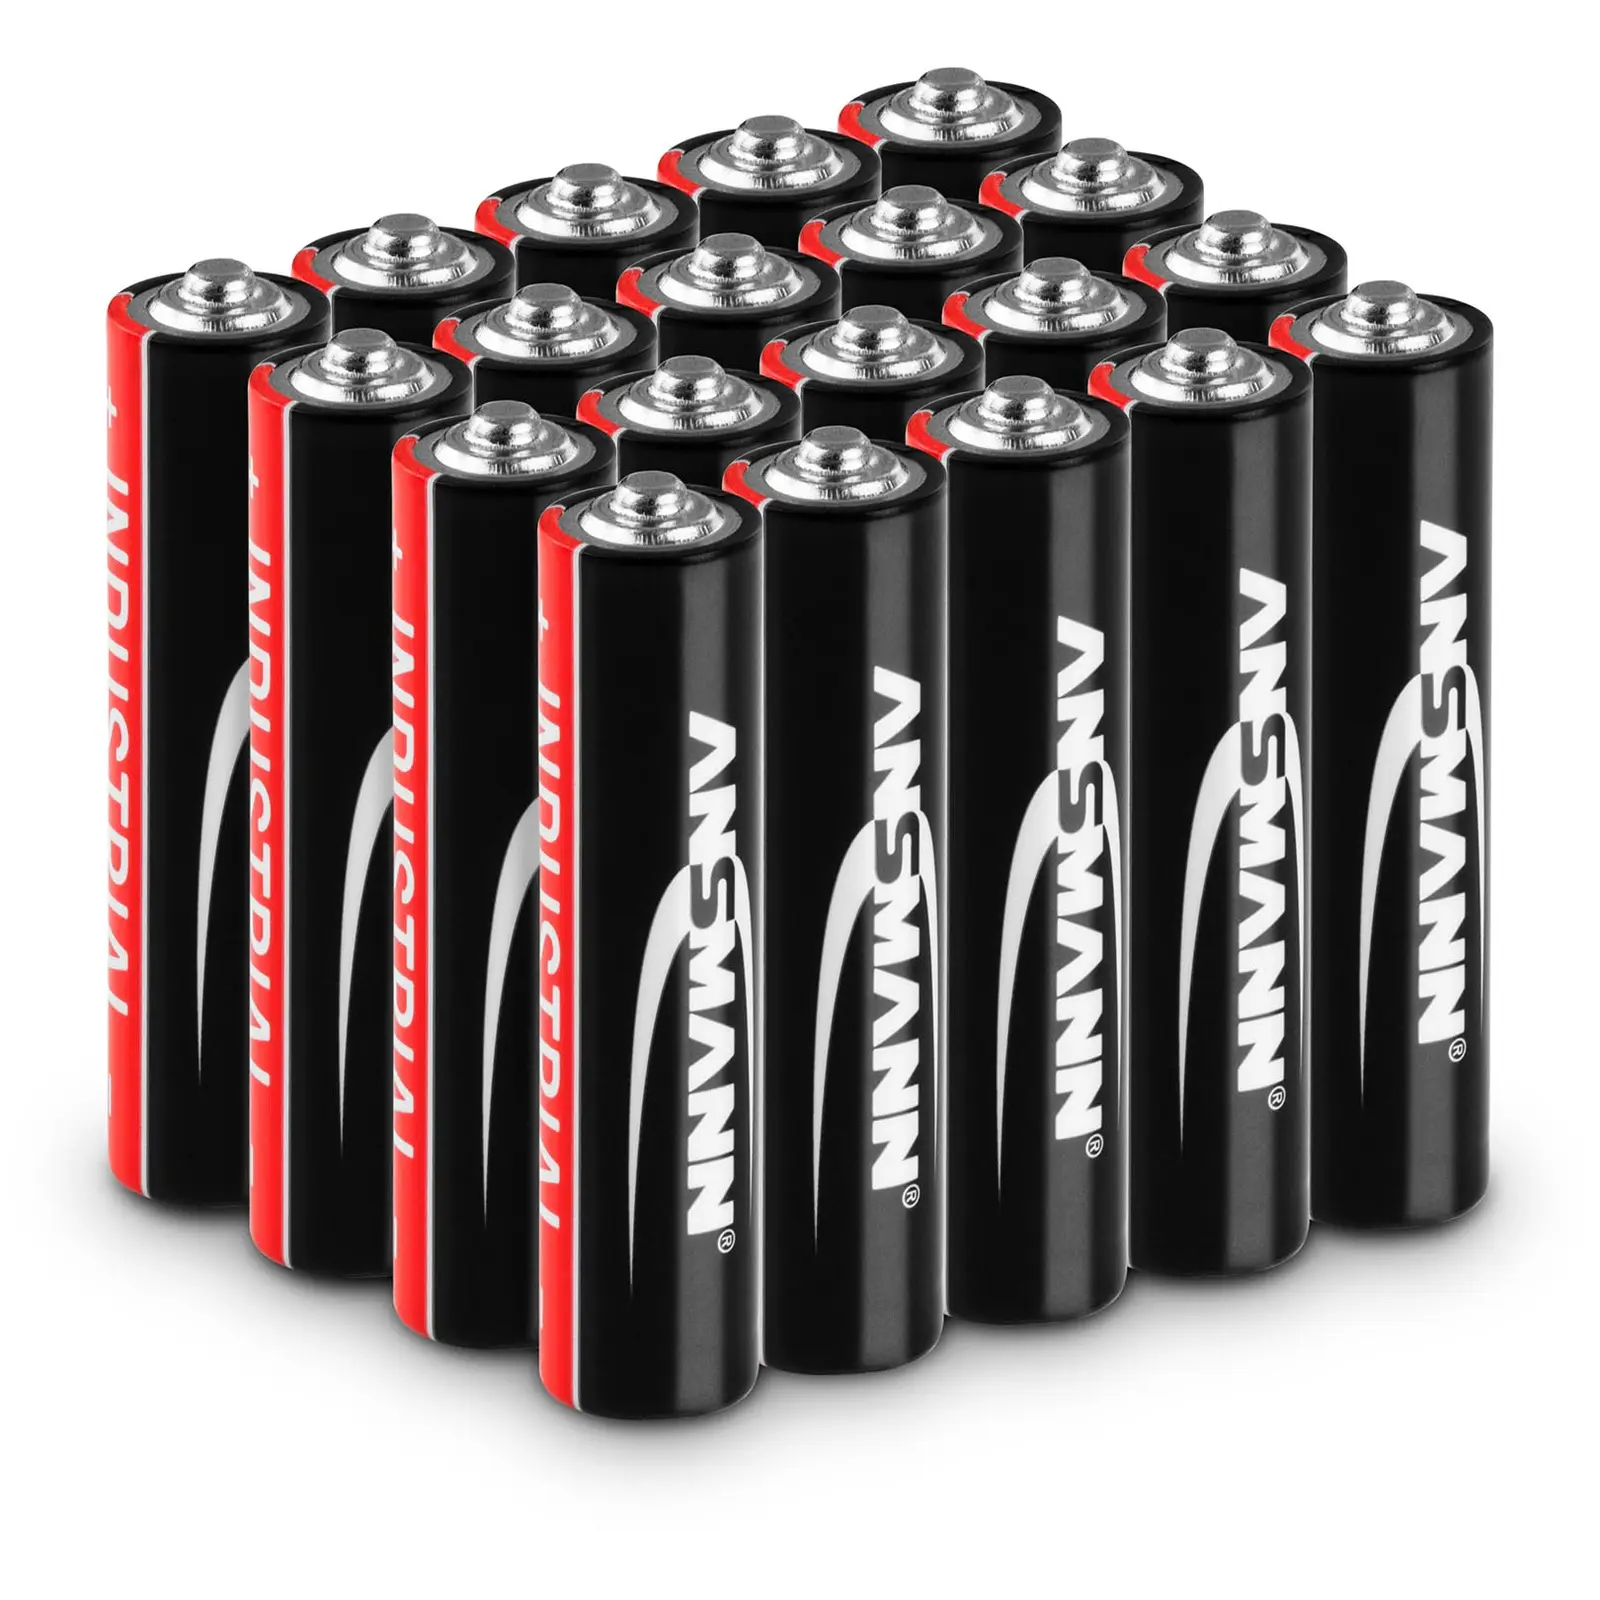 1501-0004 I alkaliczna bateria przemysłowa / alkaline industrial battery / Alkaline Batterie 1,5V AAA